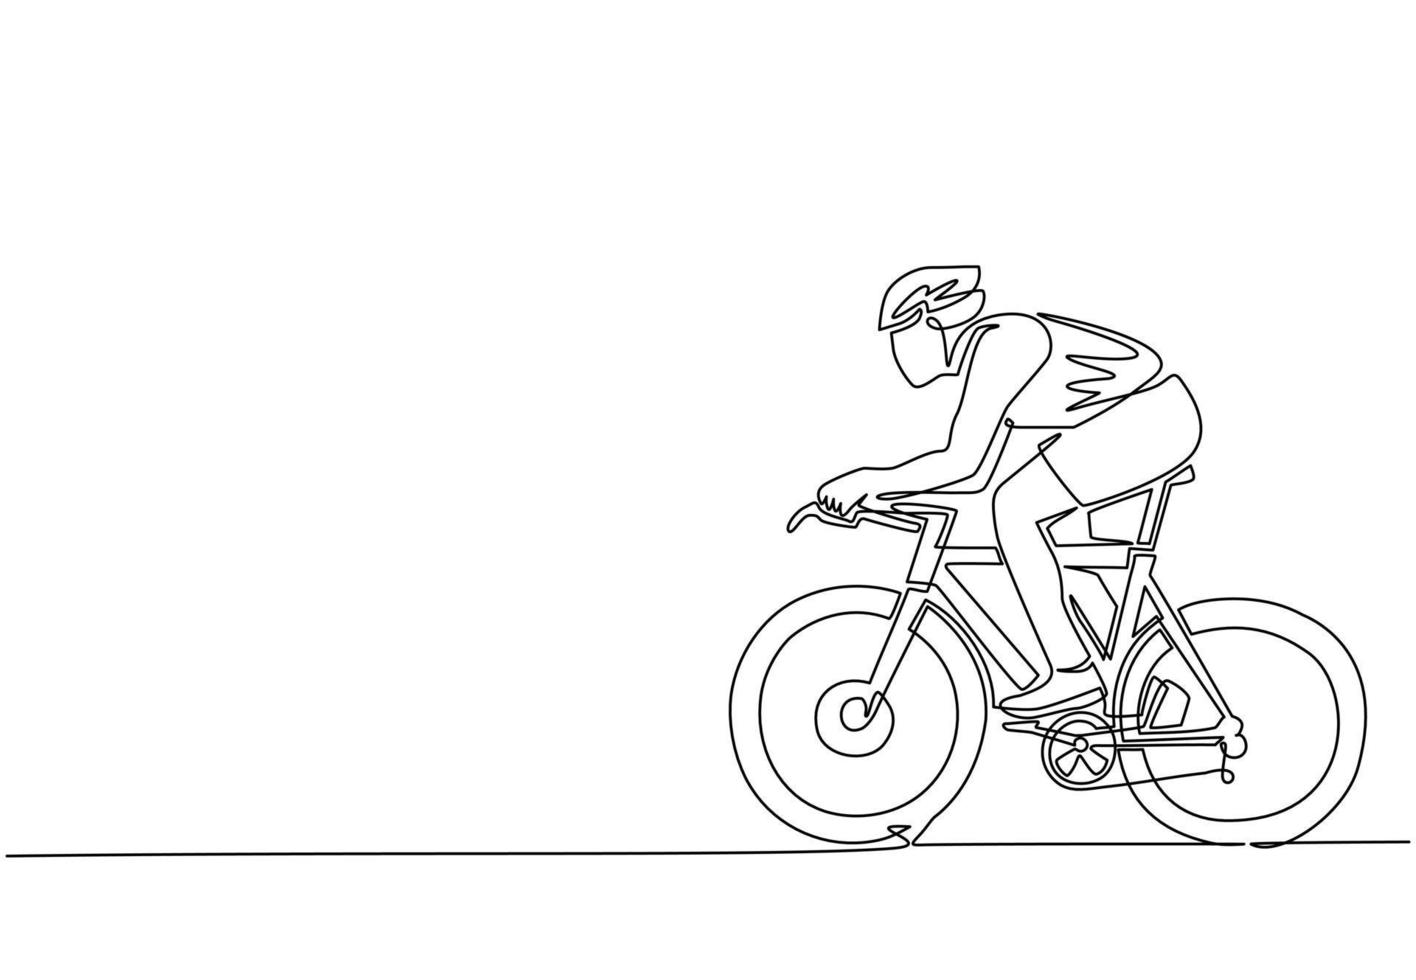 enda kontinuerlig linjeteckning ung energisk man cykelracer förbättra sin hastighet på träningspasset. racing cyklist koncept. hälsosam cykling sportevenemang. dynamisk en rad rita grafisk design vektor